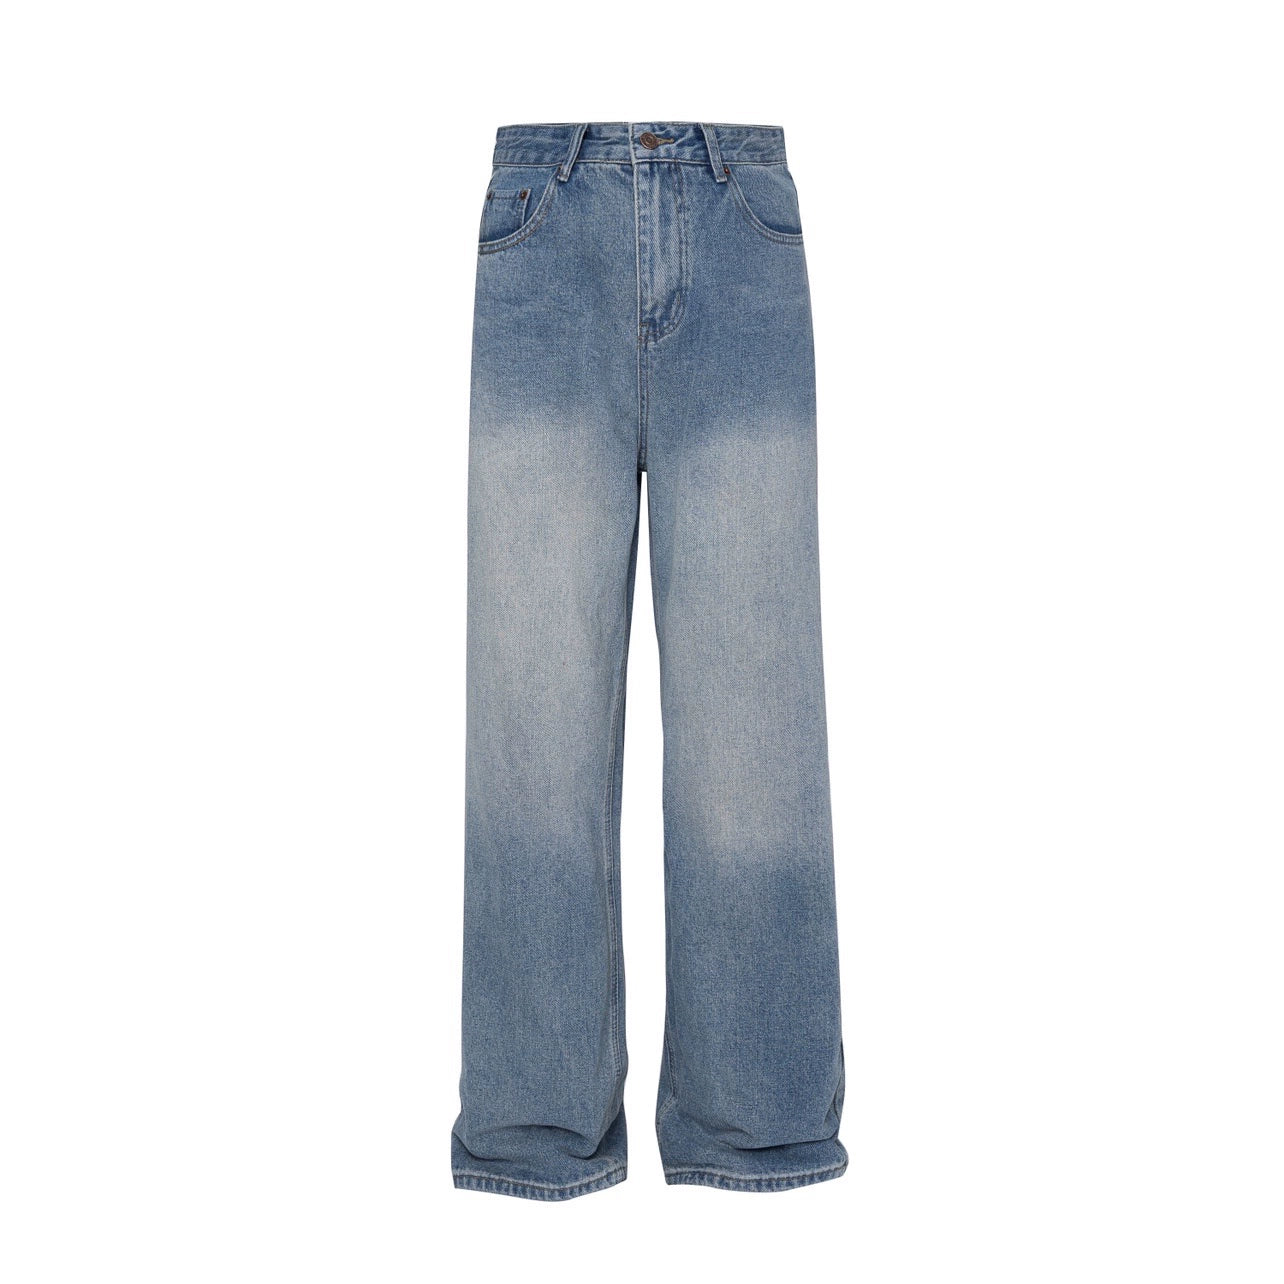 MZ American retro wash gradient jeans, men's fashion brand design